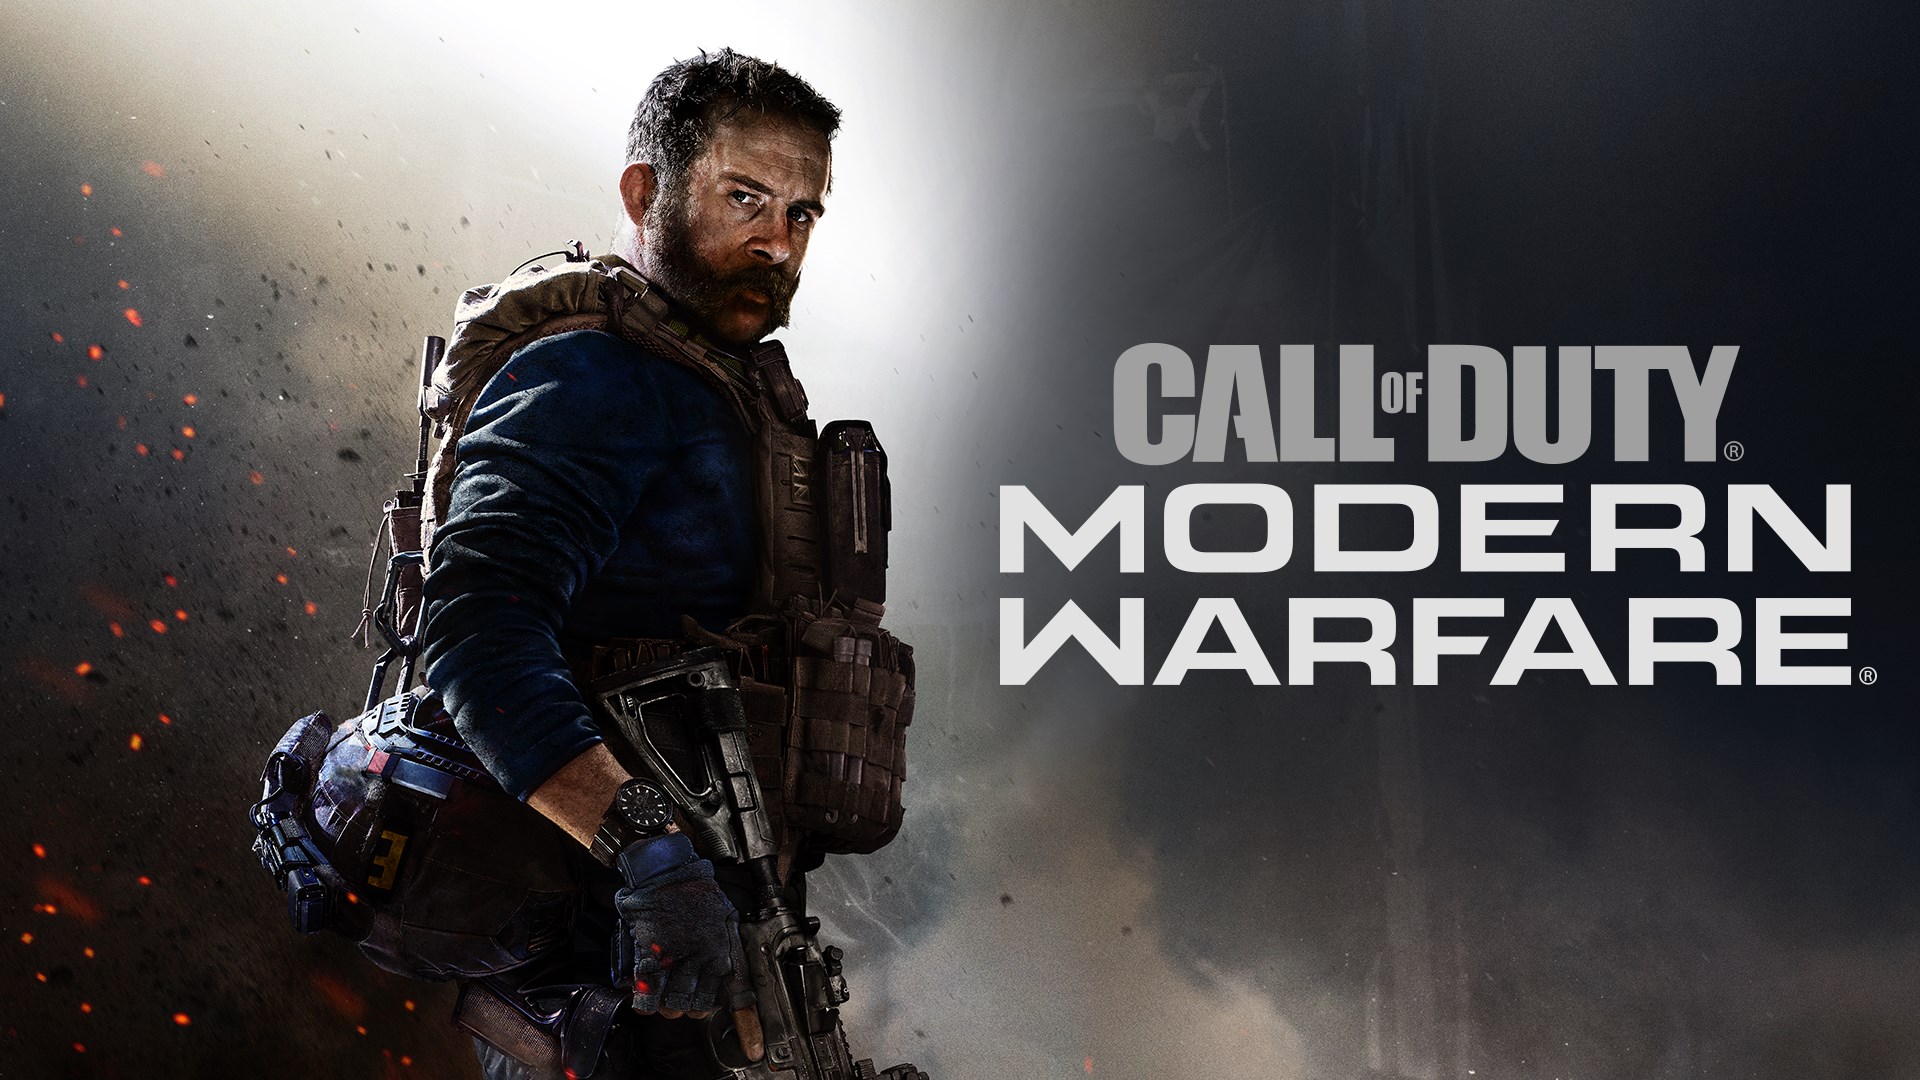 Call of Duty: Modern Warfare - Edição Digital Padrão